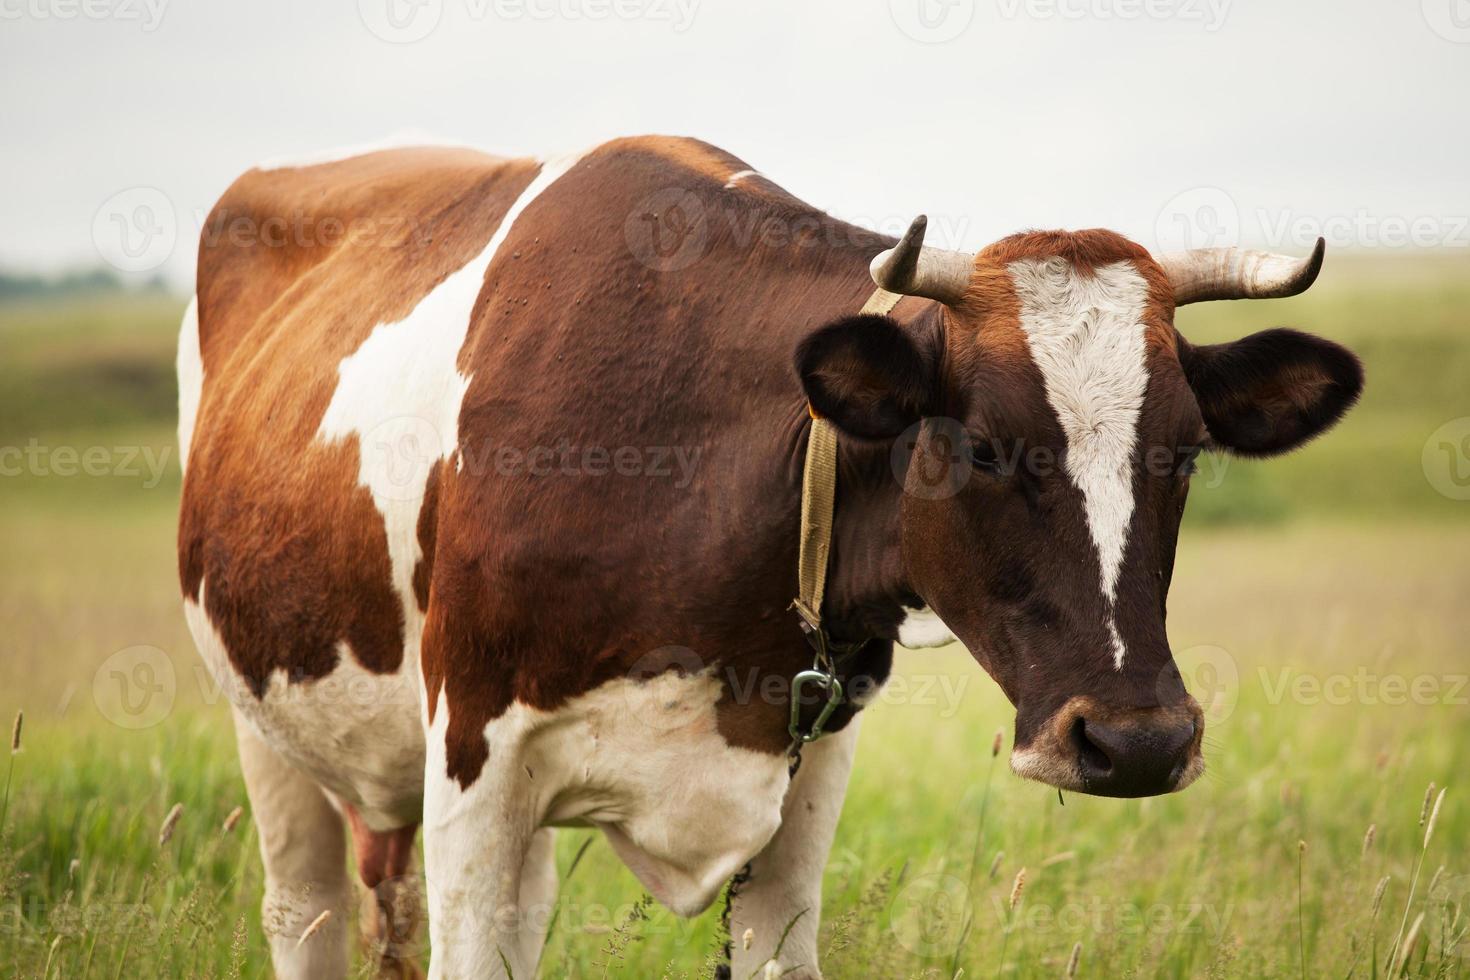 gefotografeerde close-up van een koe foto